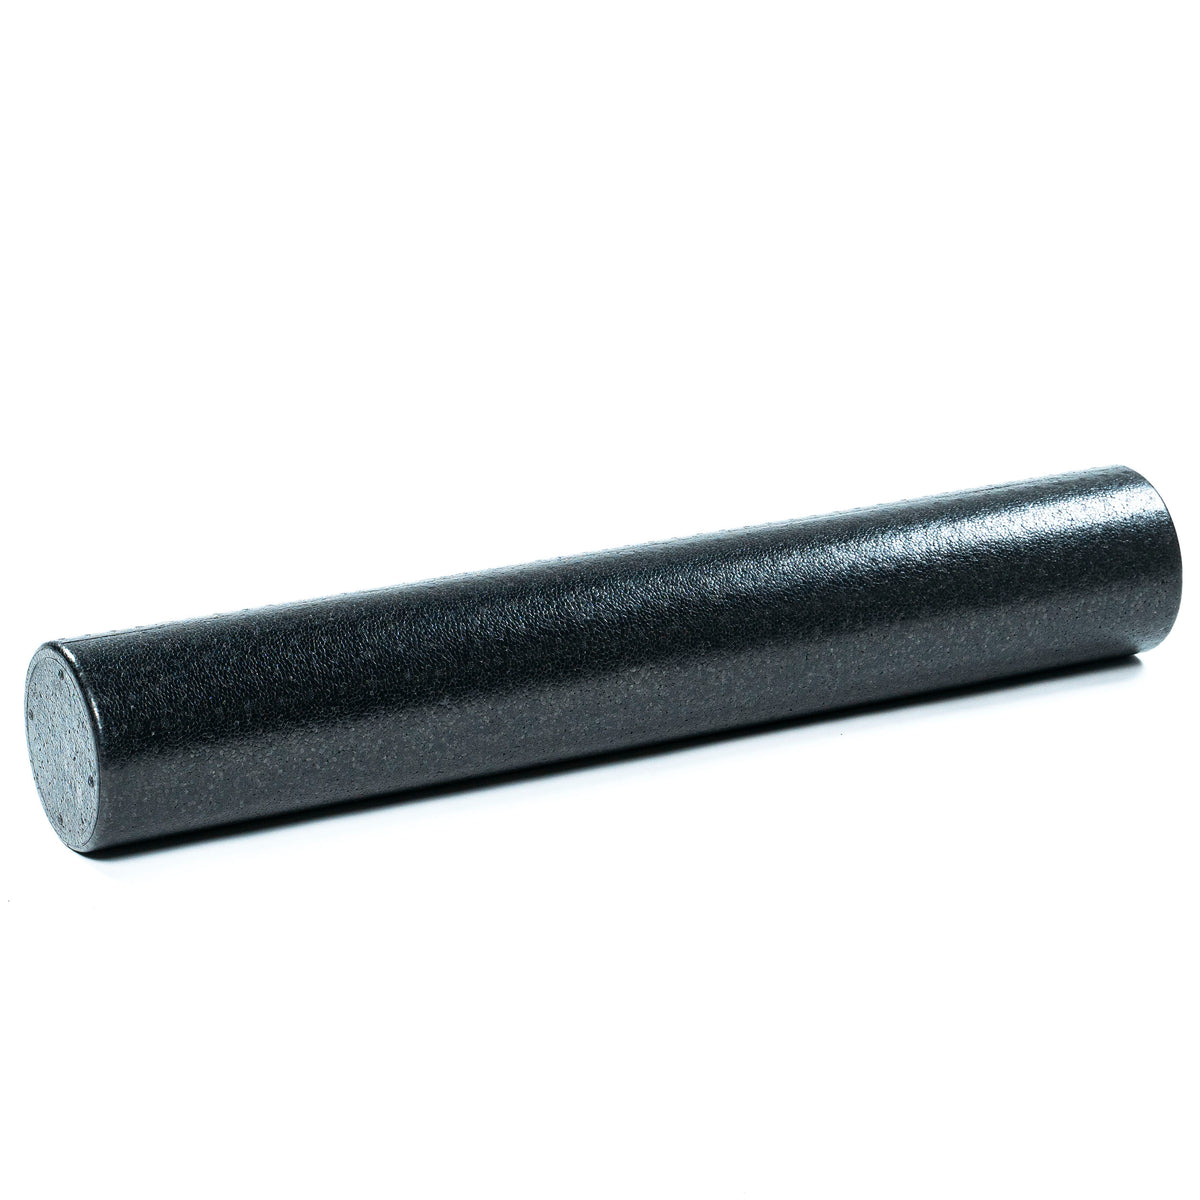 Black Foam Roller - 90cm